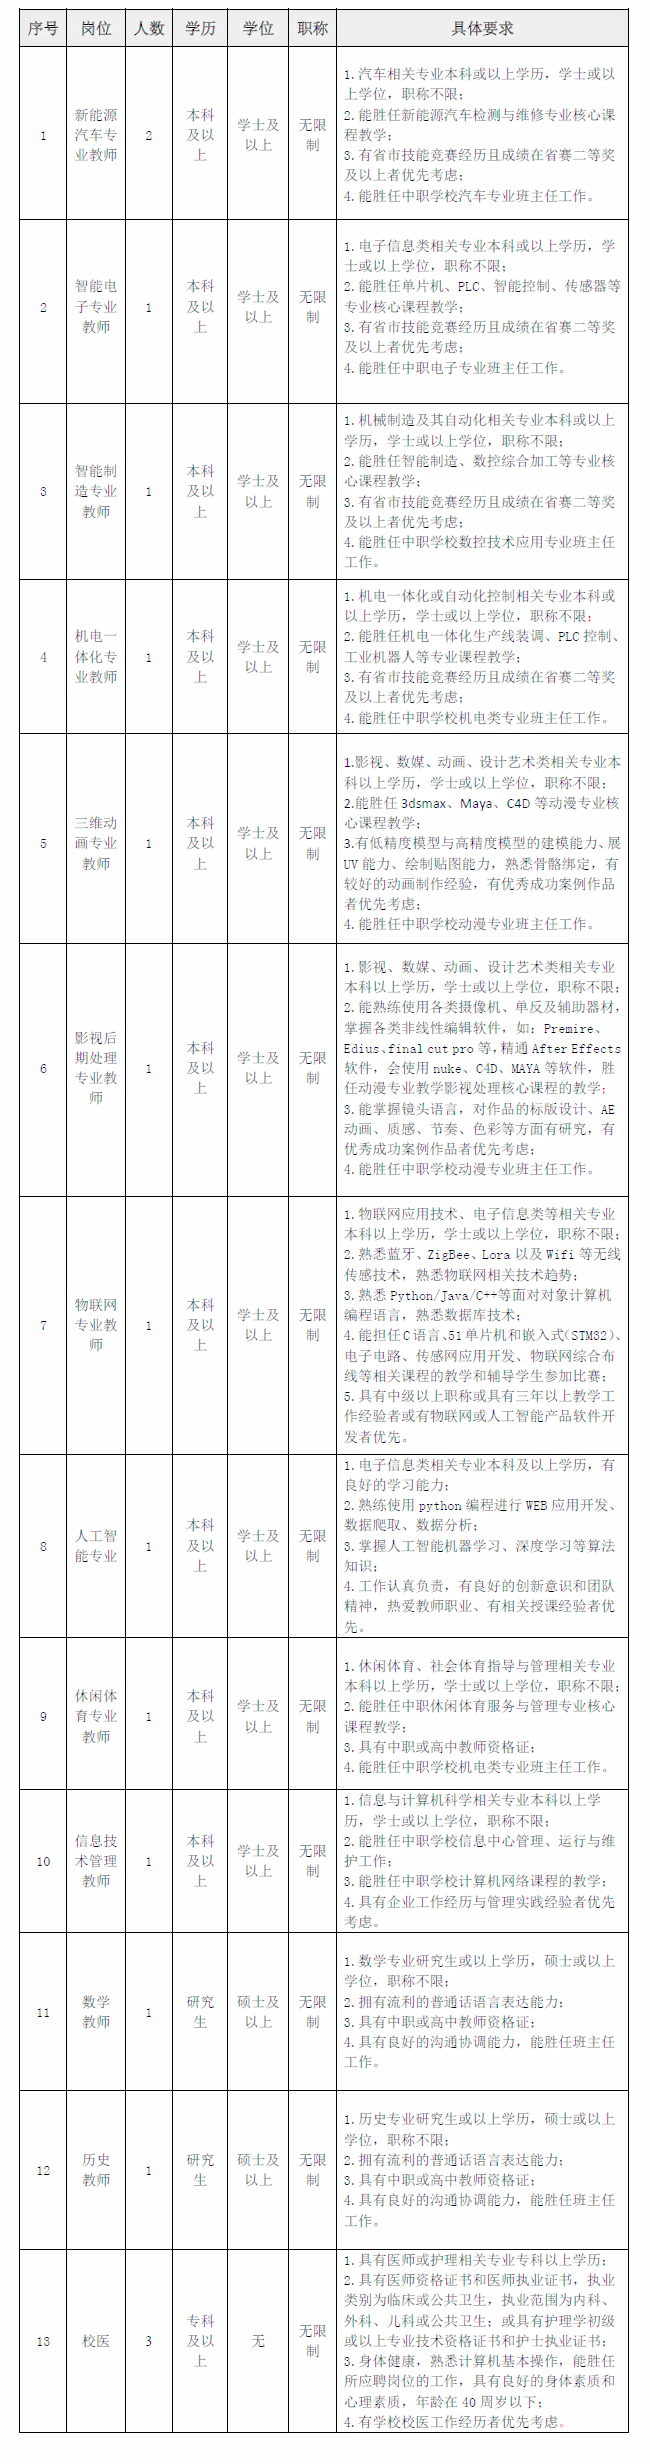 2021年广州市番禺区职业技术学校招聘聘用制教师公告(13人)